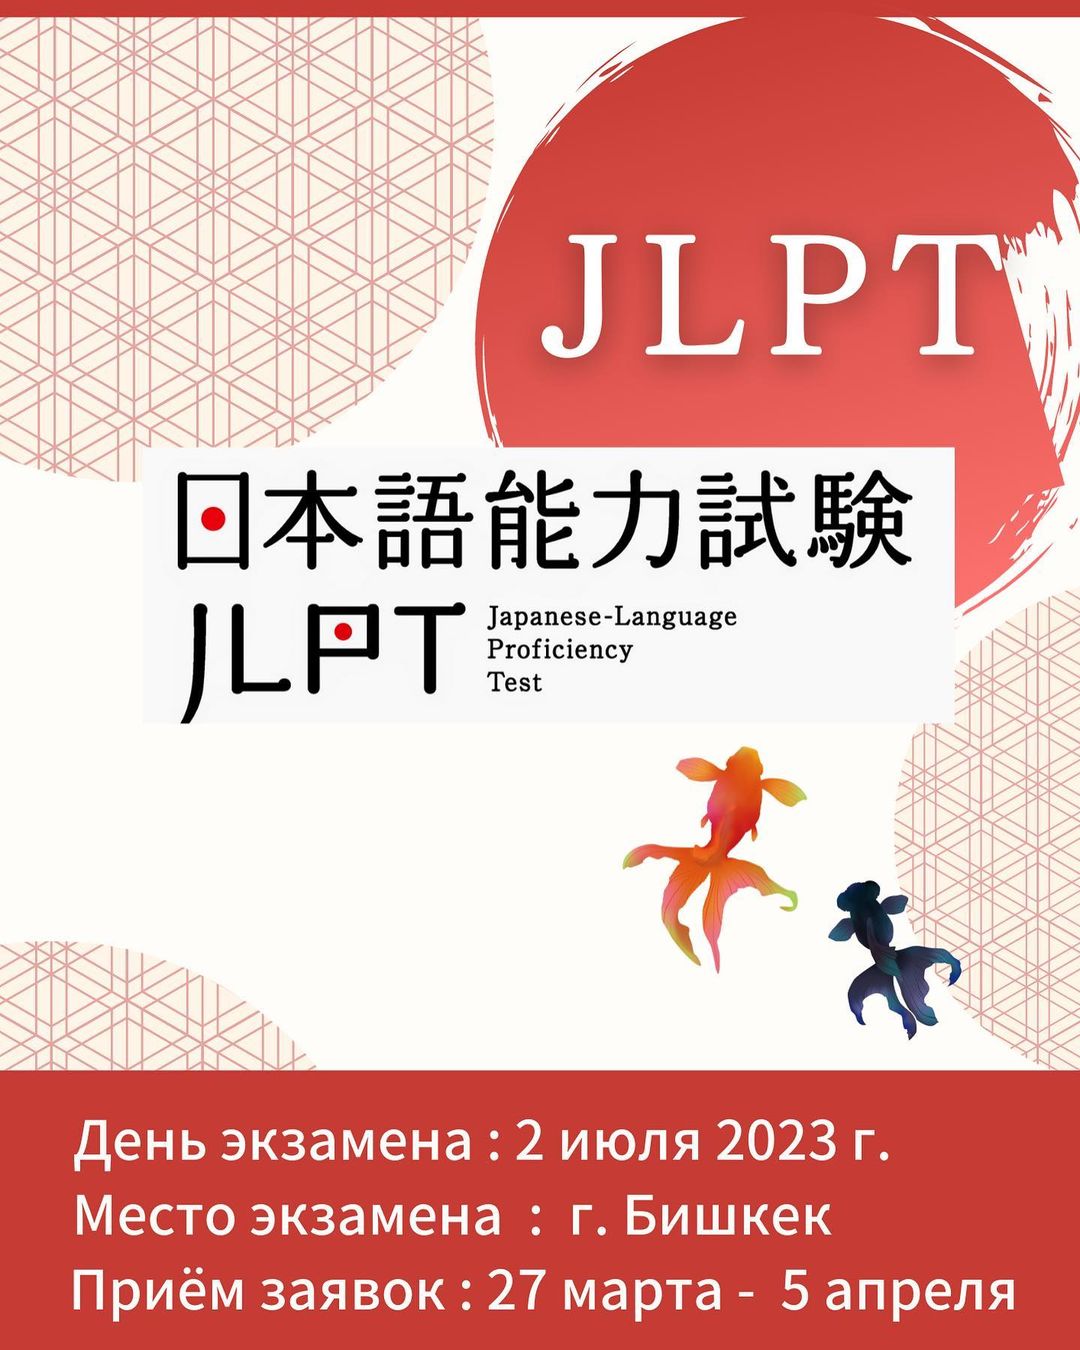 Приём заявок на экзамен JLPT